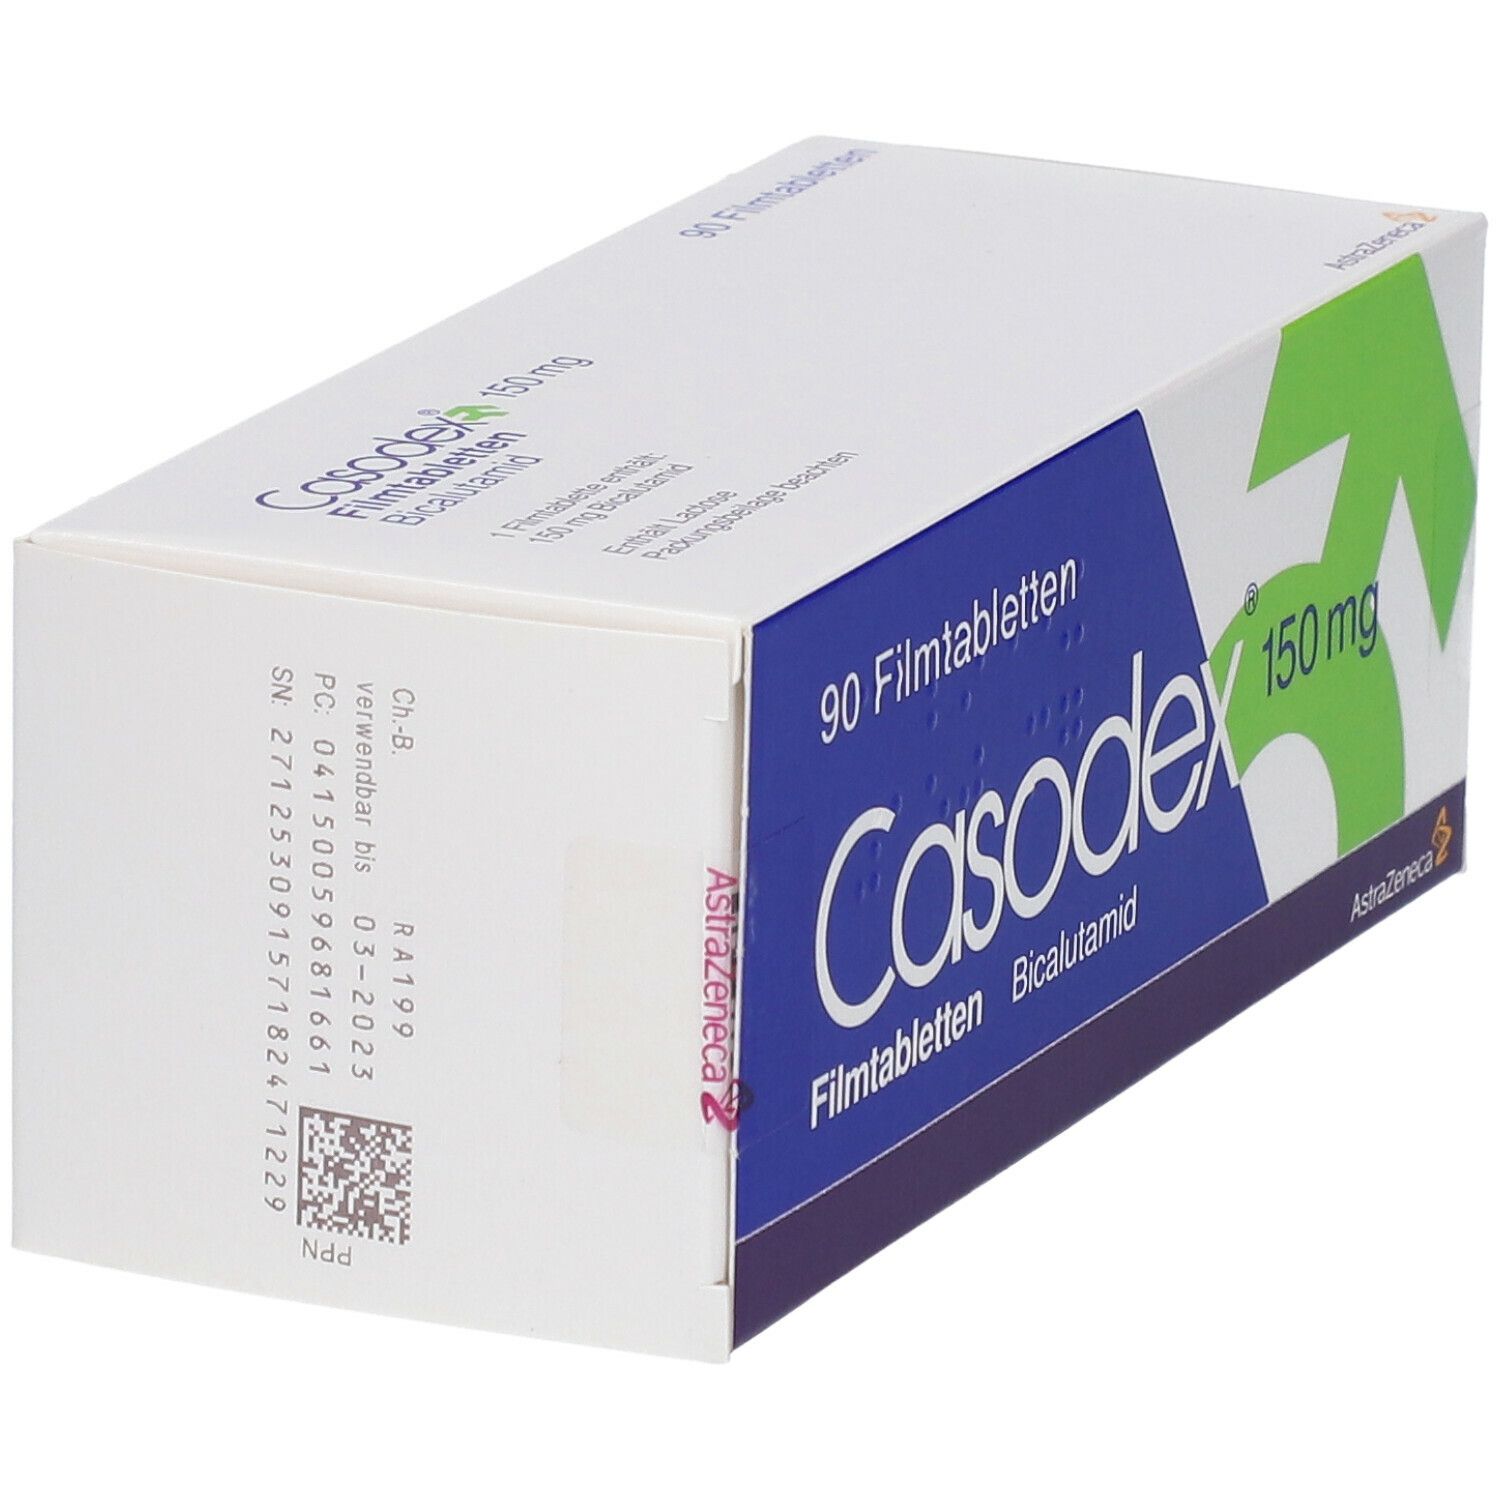 Casodex® 150  mg